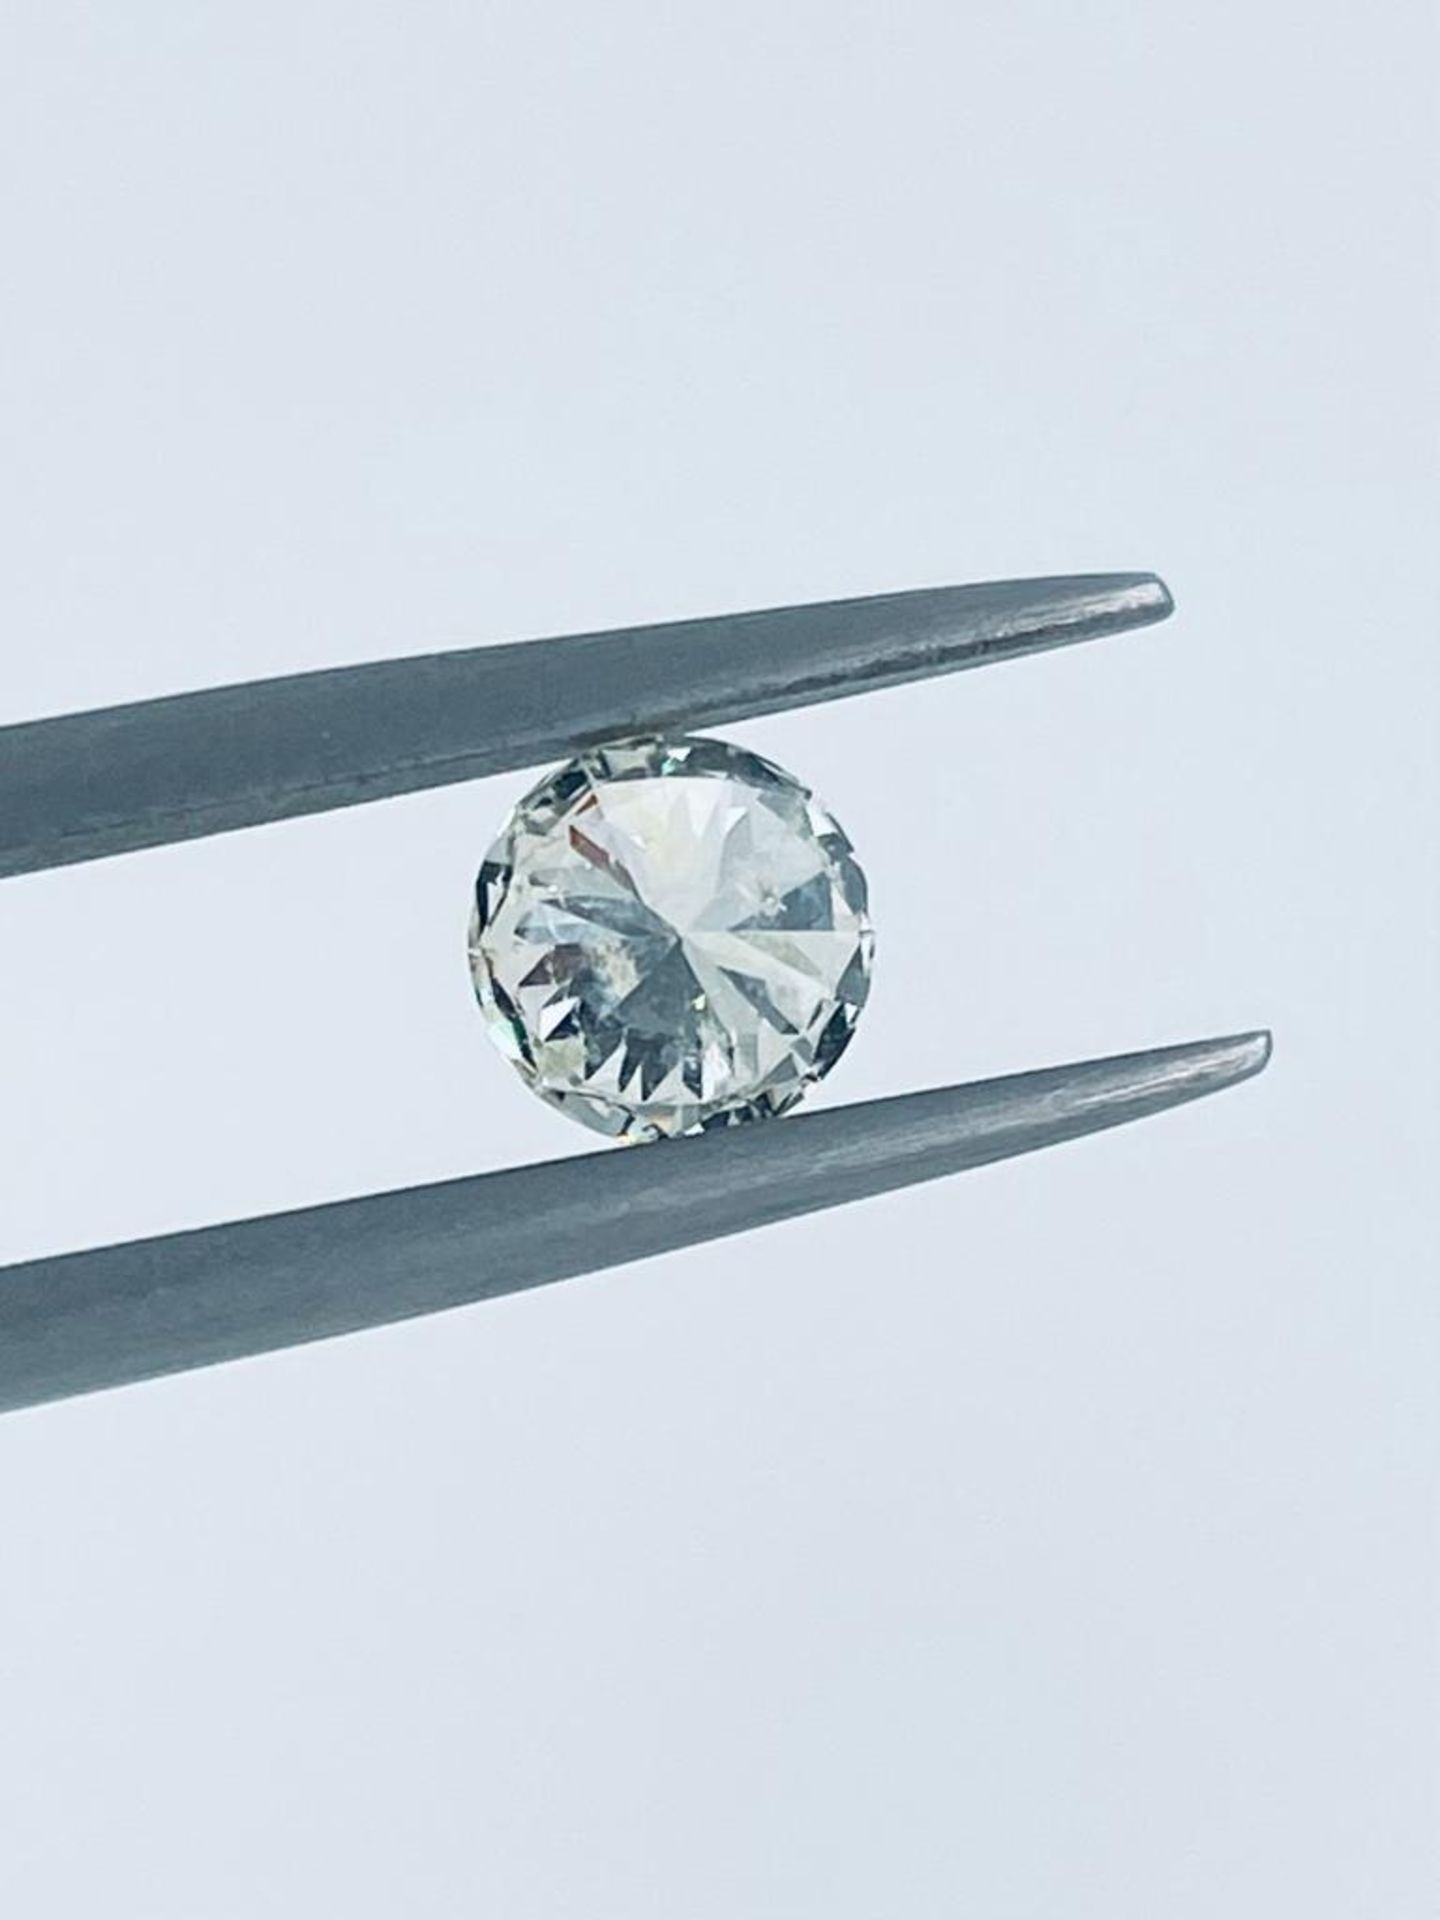 1 DIAMOND EXALTED CLARITY 0.98 CT I - I1 - BRILLIANT CUT - CERTIFICATE NOT PRESENT - C20404-2 - Bild 4 aus 5